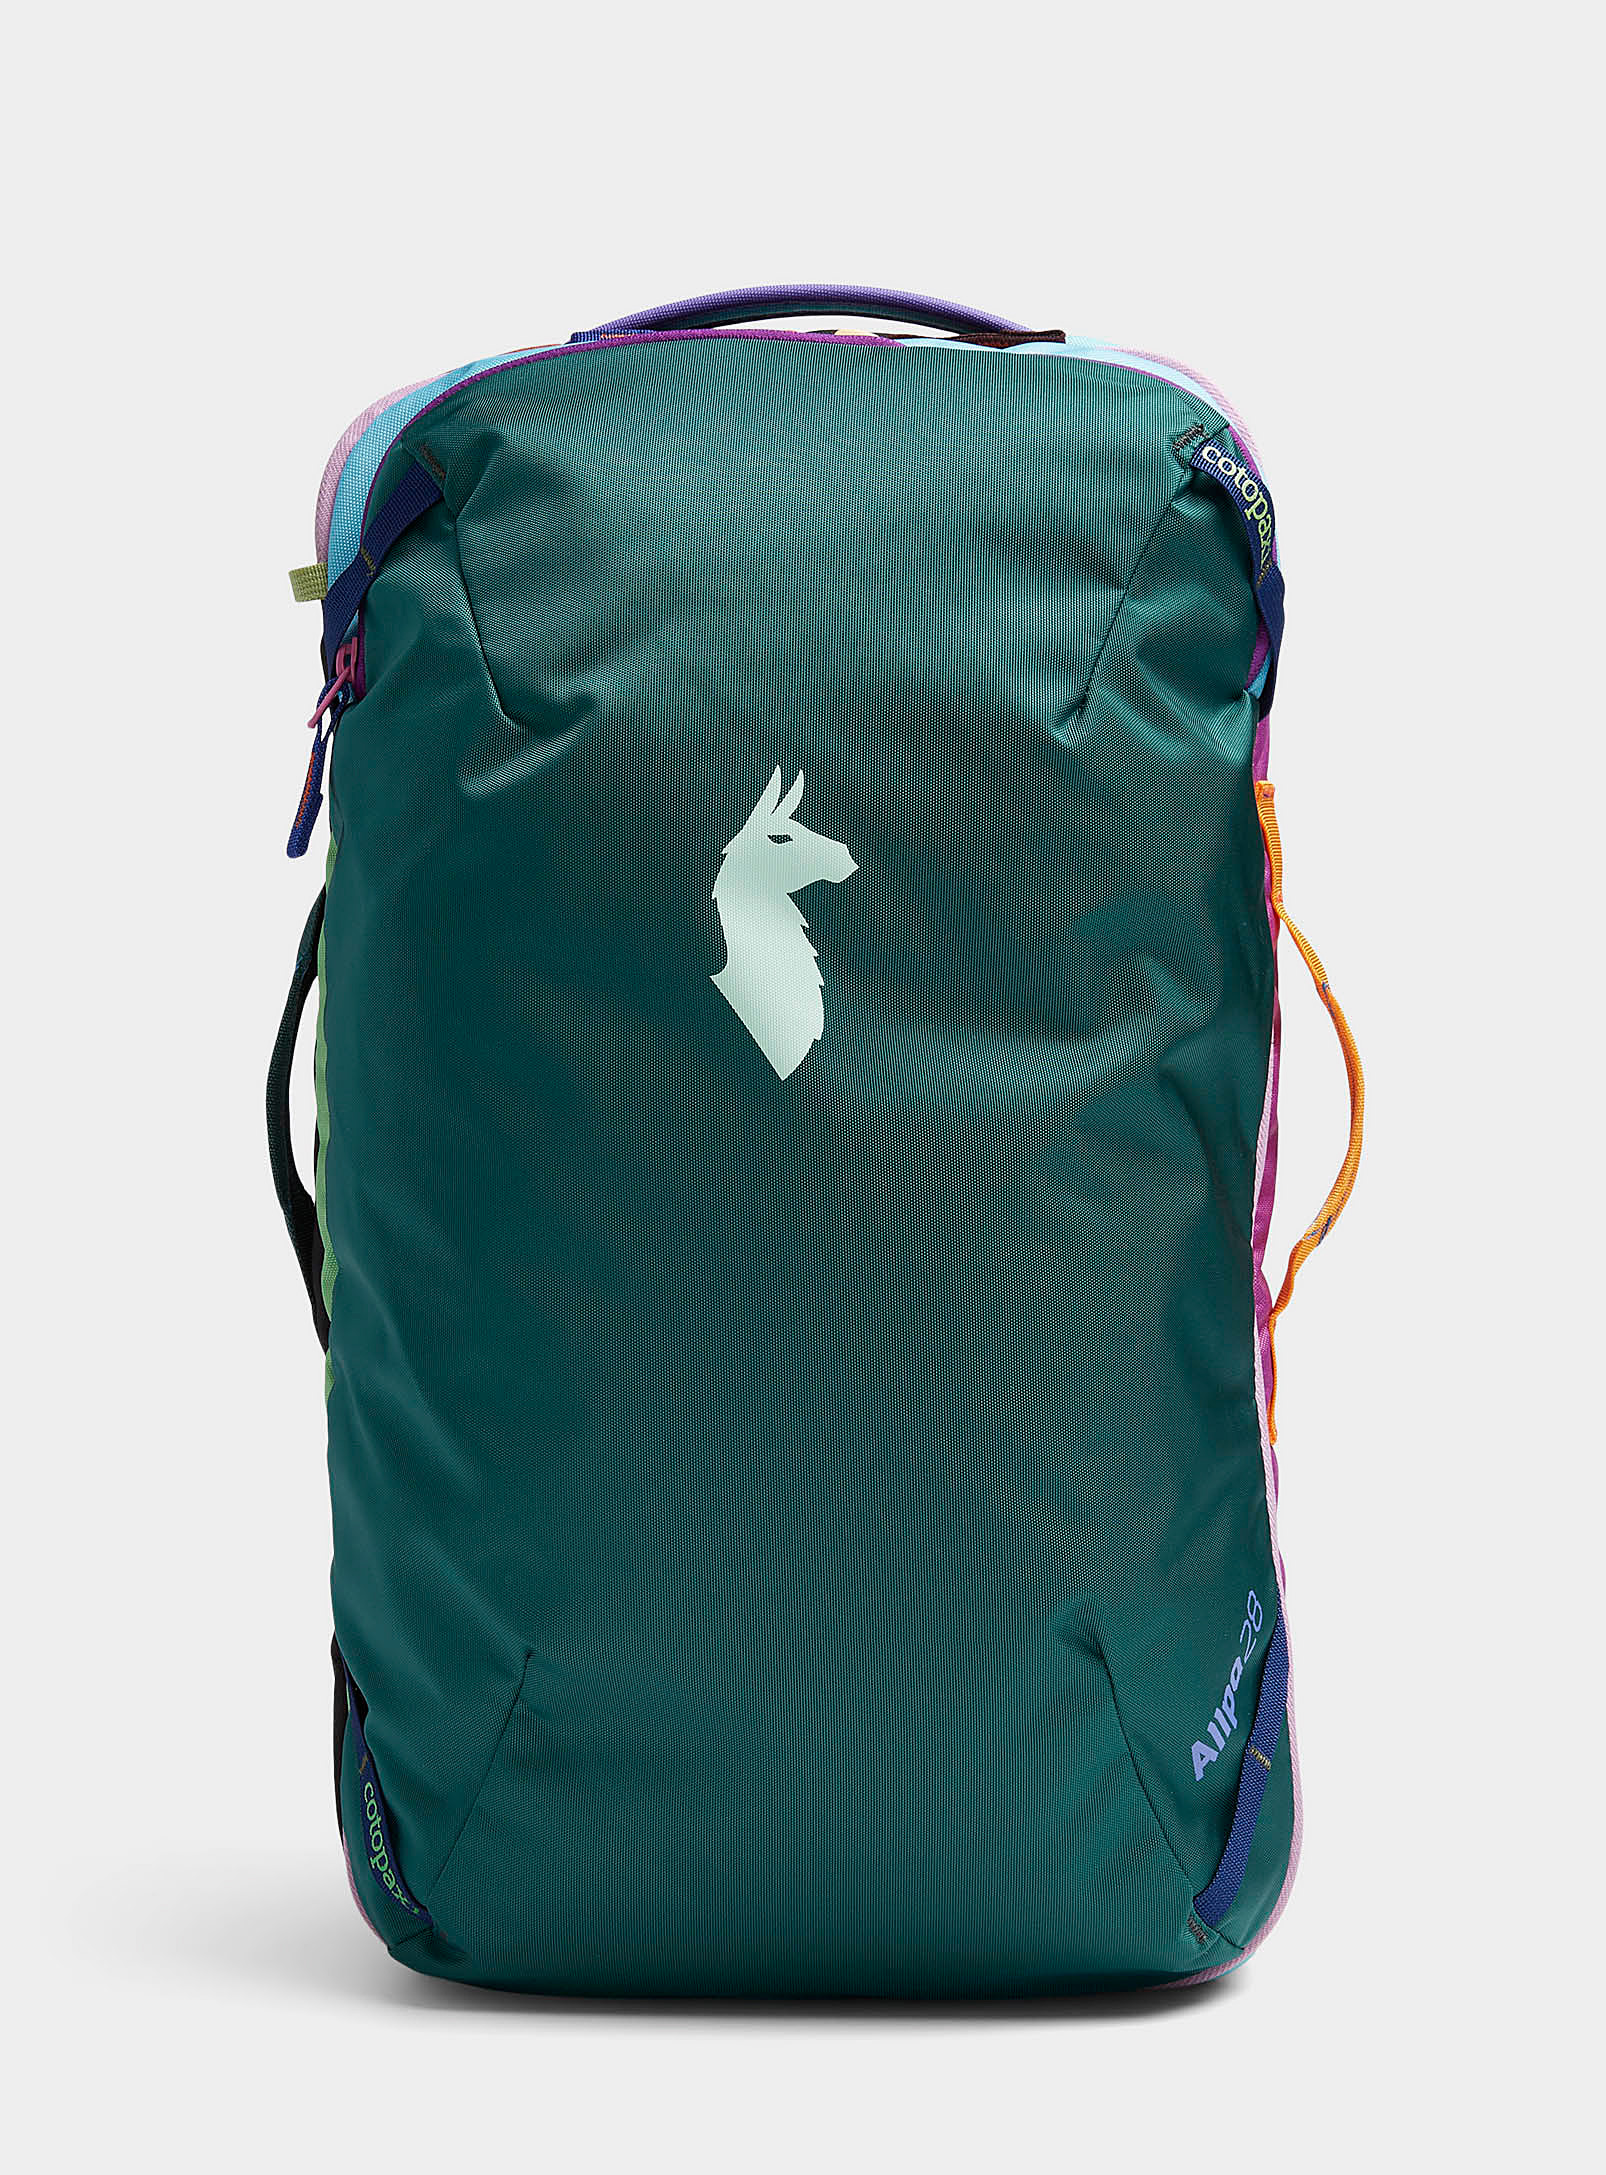 Cotopaxi - Le sac à dos de voyage Allpa 28 litres Coloris uniques issus de la collection Del Da